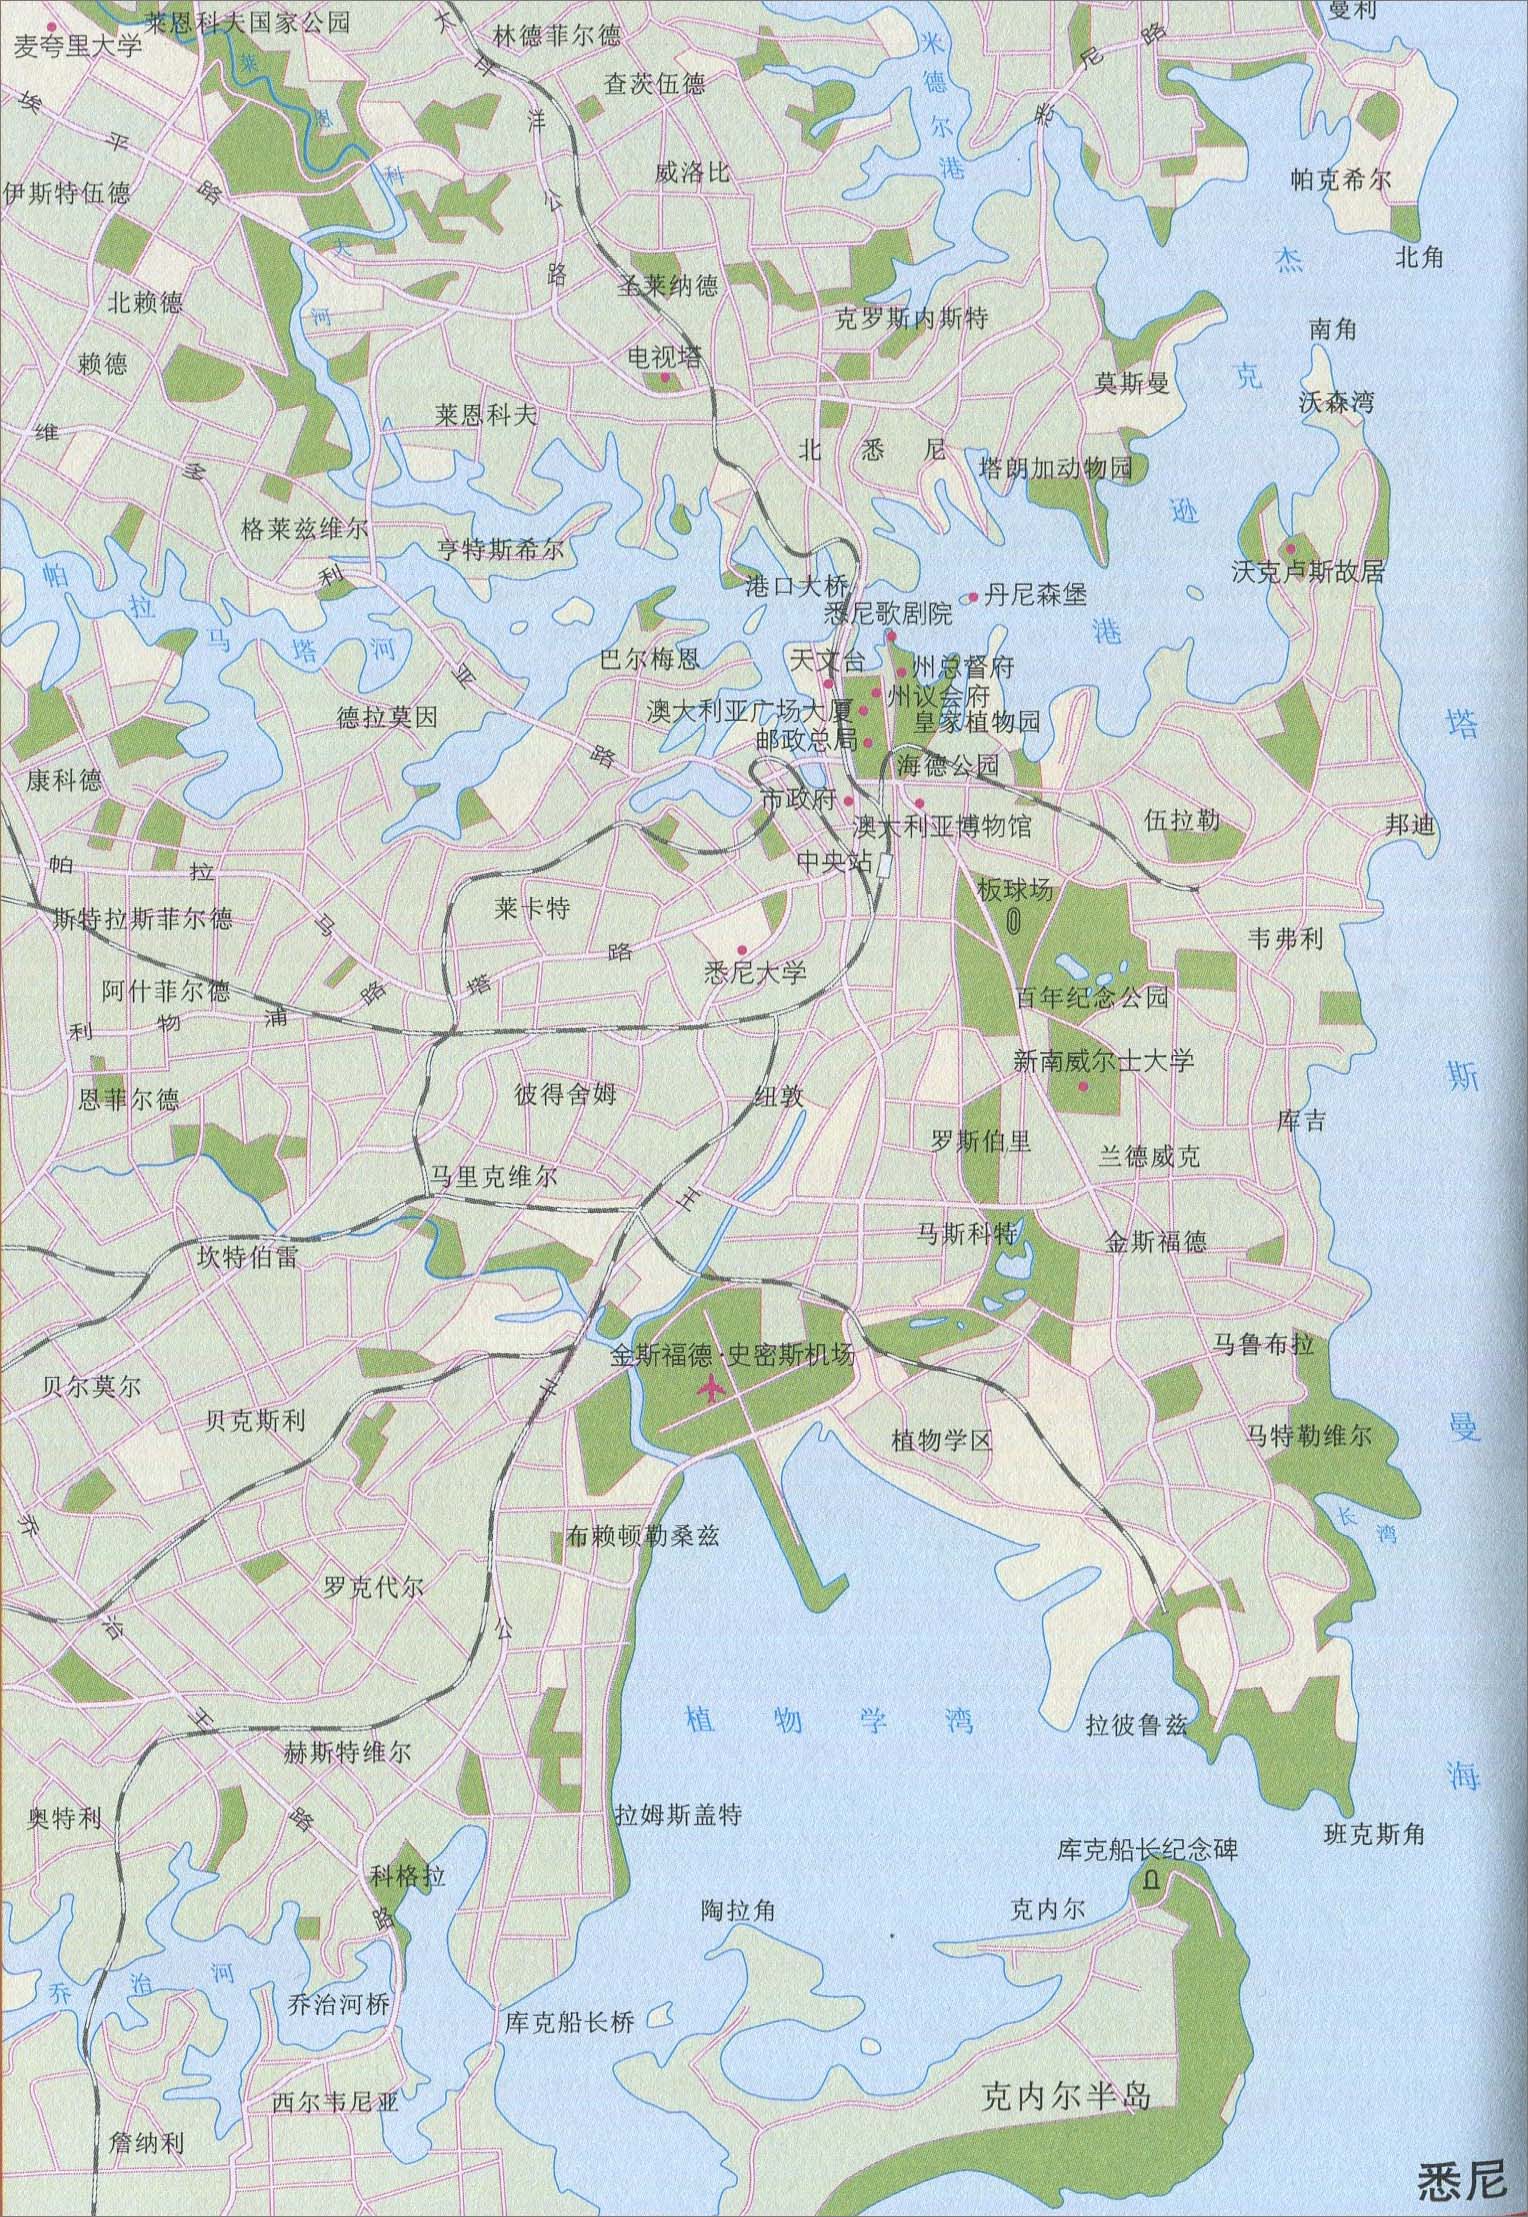 悉尼城区旅游地图_澳大利亚地图库图片